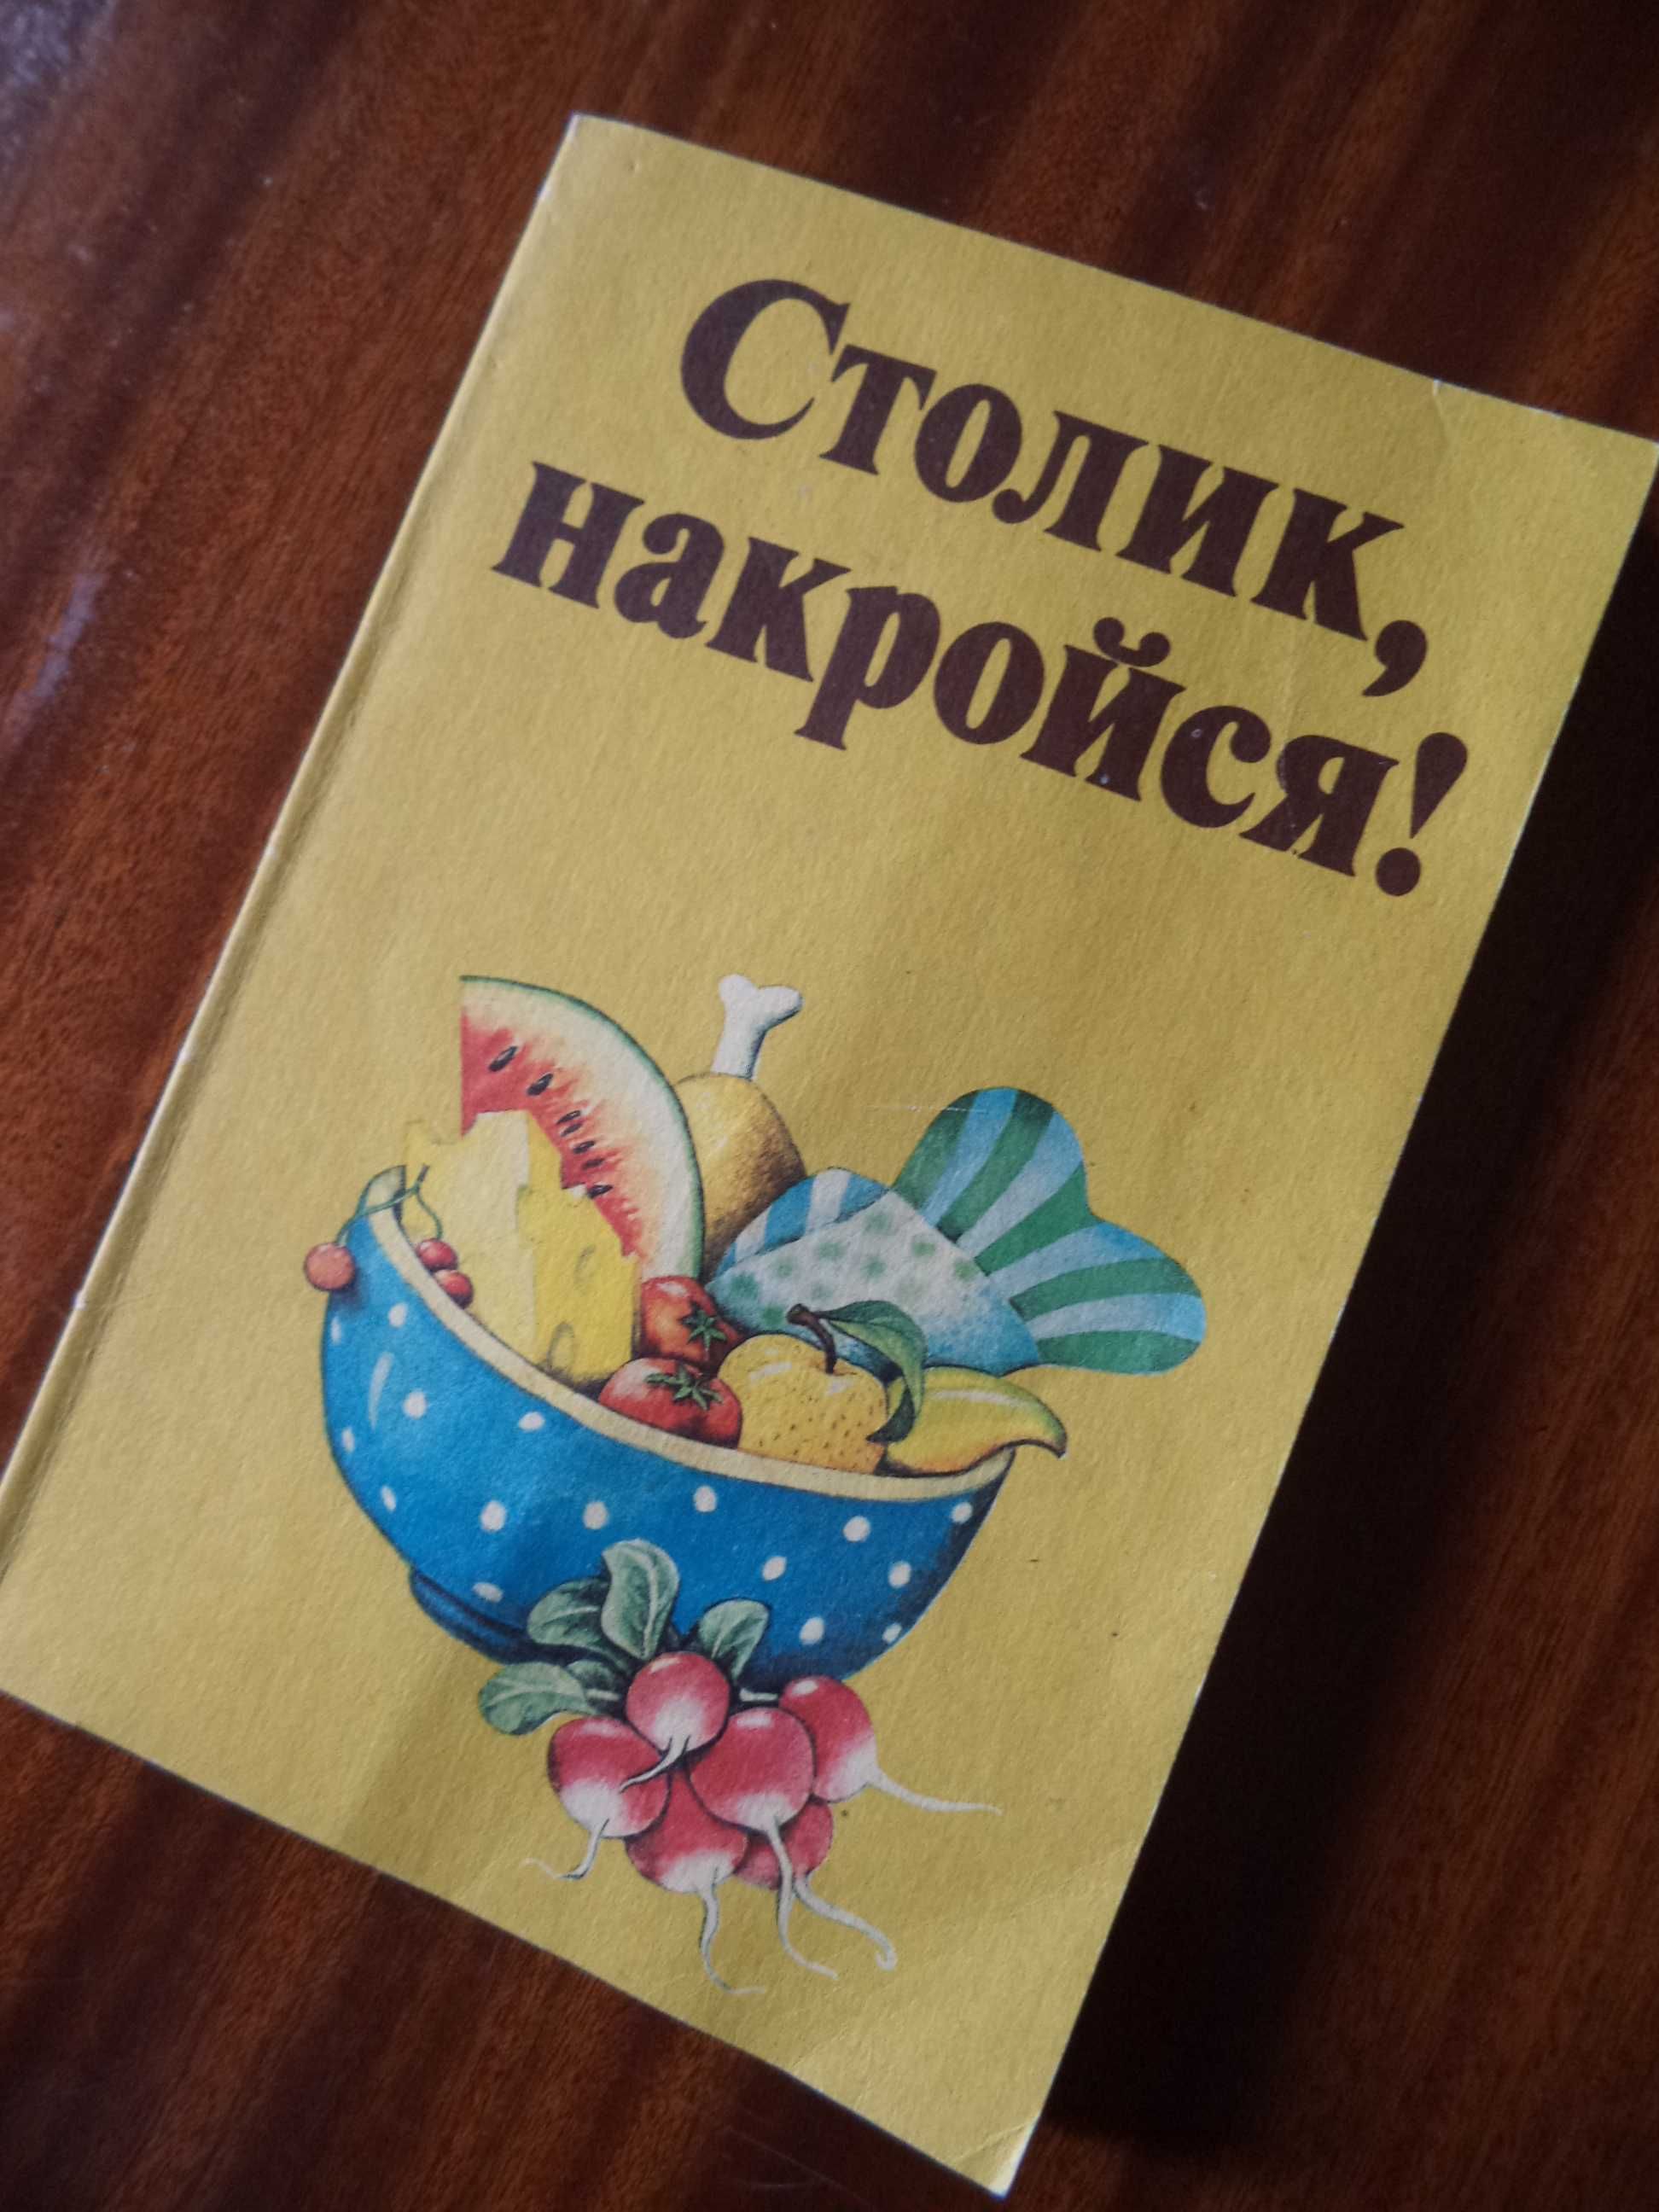 Детская поваренная книга «Столик накройся!» 1985г.изд. Берлин рус. яз.